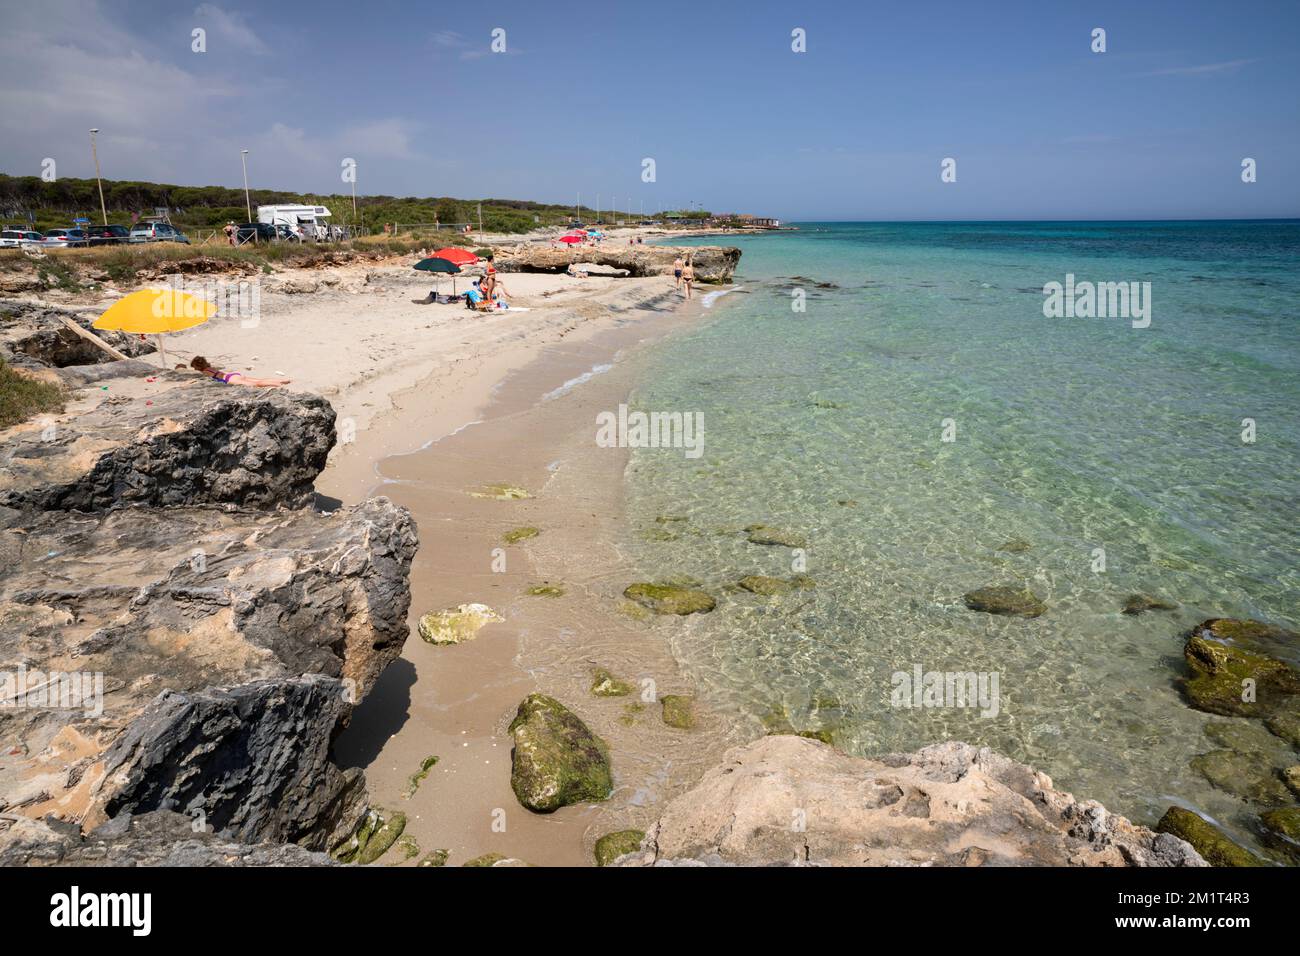 Plage de Spiaggia di Torre Specchia sur la côte Adriatique avec eau turquoise, San Foca, près de Melendugno, province de Lecce, Puglia, Italie, Europe Banque D'Images